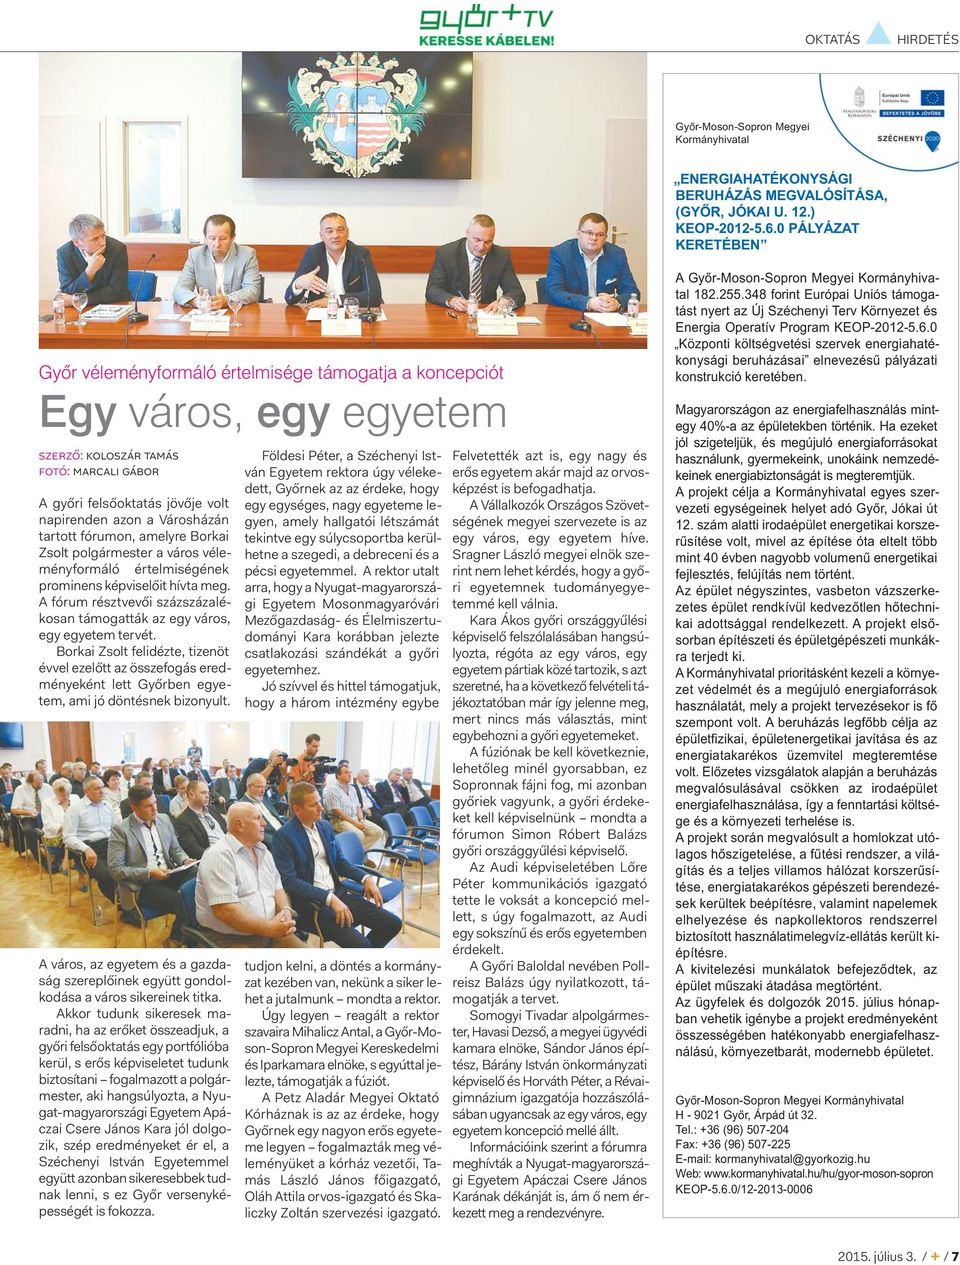 Városházán tartott fórumon, amelyre Borkai Zsolt polgármester a város véleményformáló értelmiségének prominens képviselőit hívta meg.